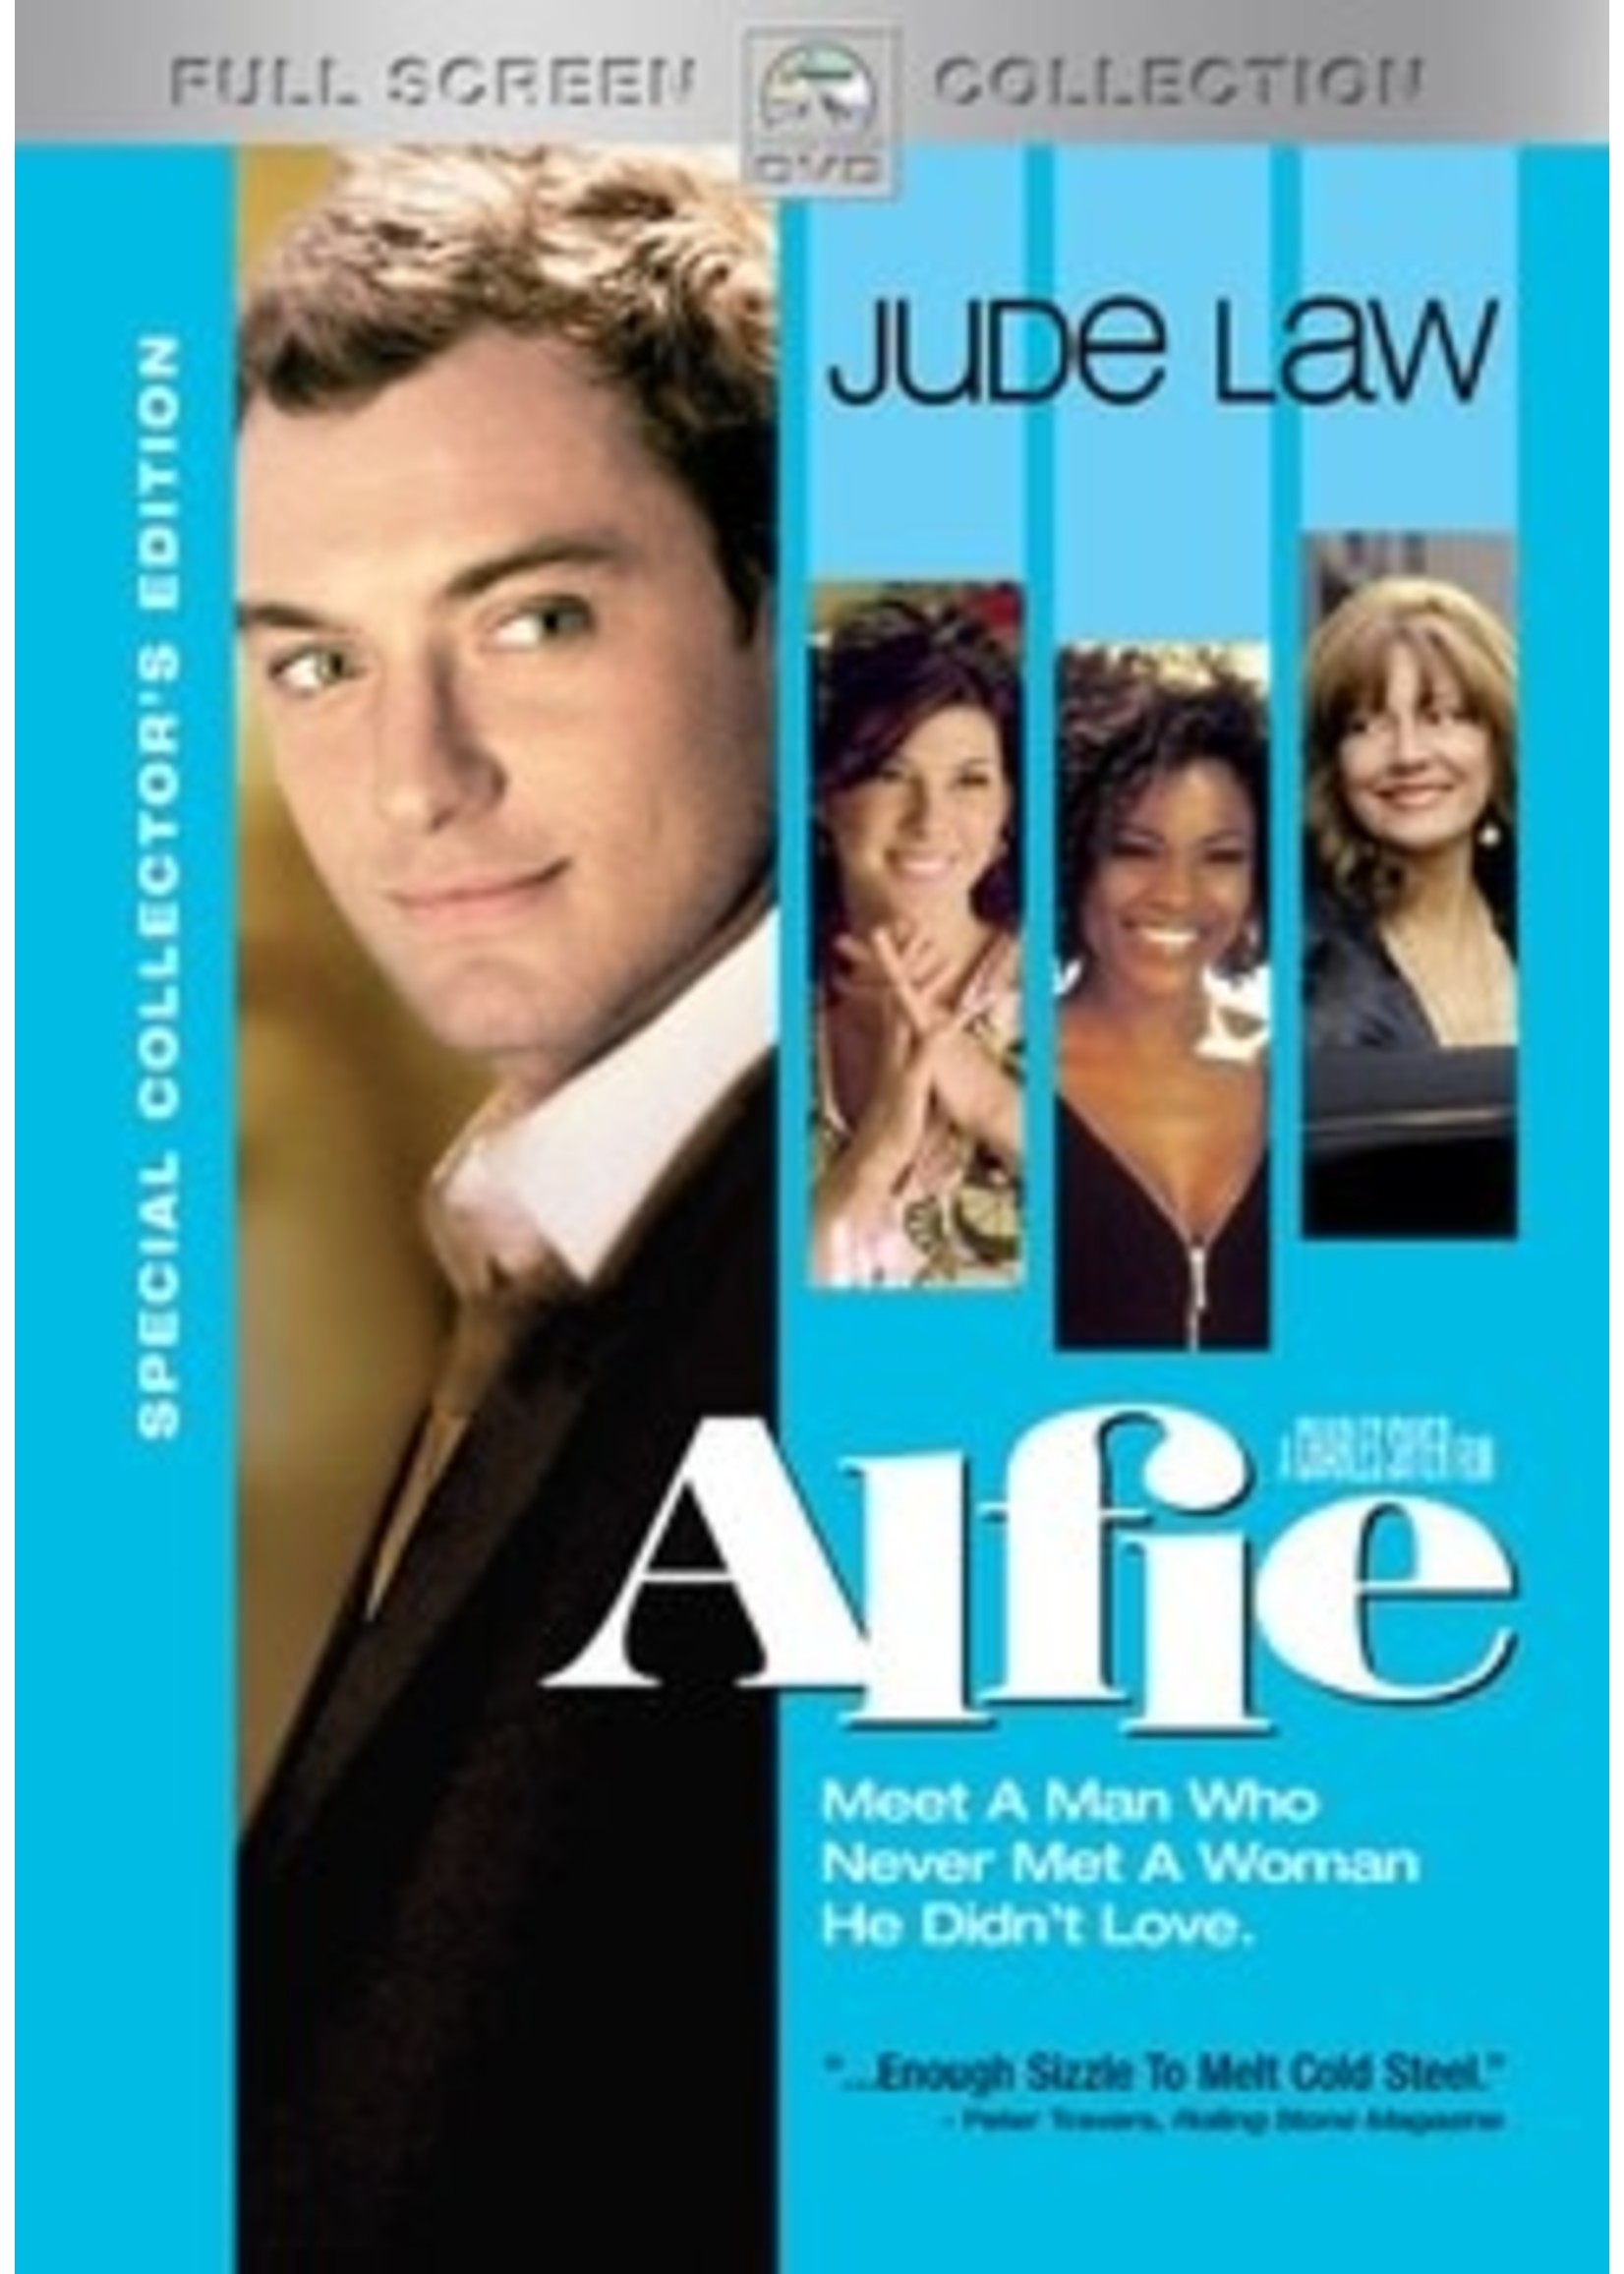 Alfie (DVD)